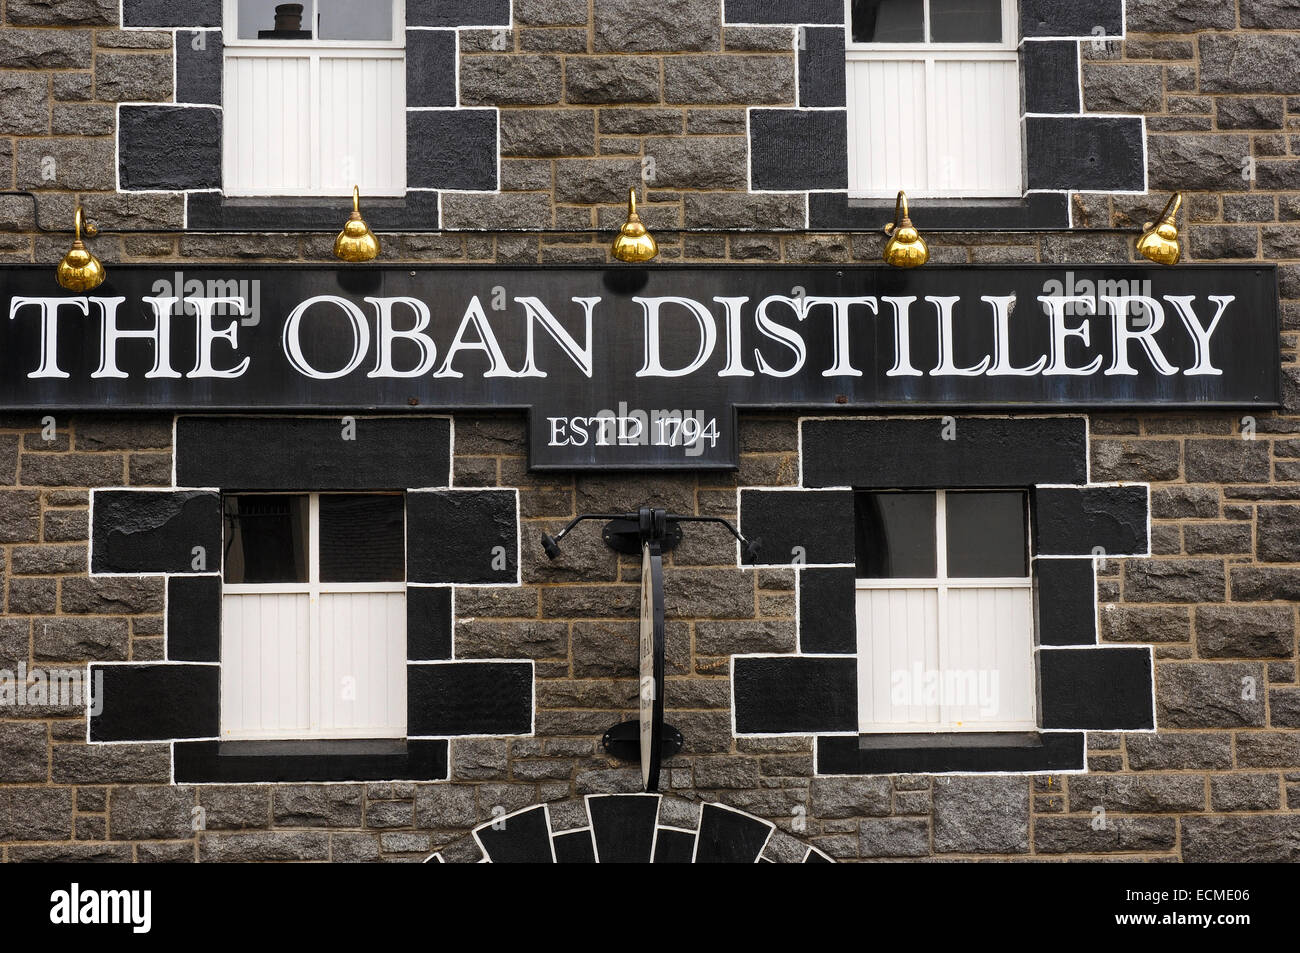 Oban distilleria di whisky, 1794, West Highlands, Argyll and Bute, Scotland, Regno Unito, Europa Foto Stock